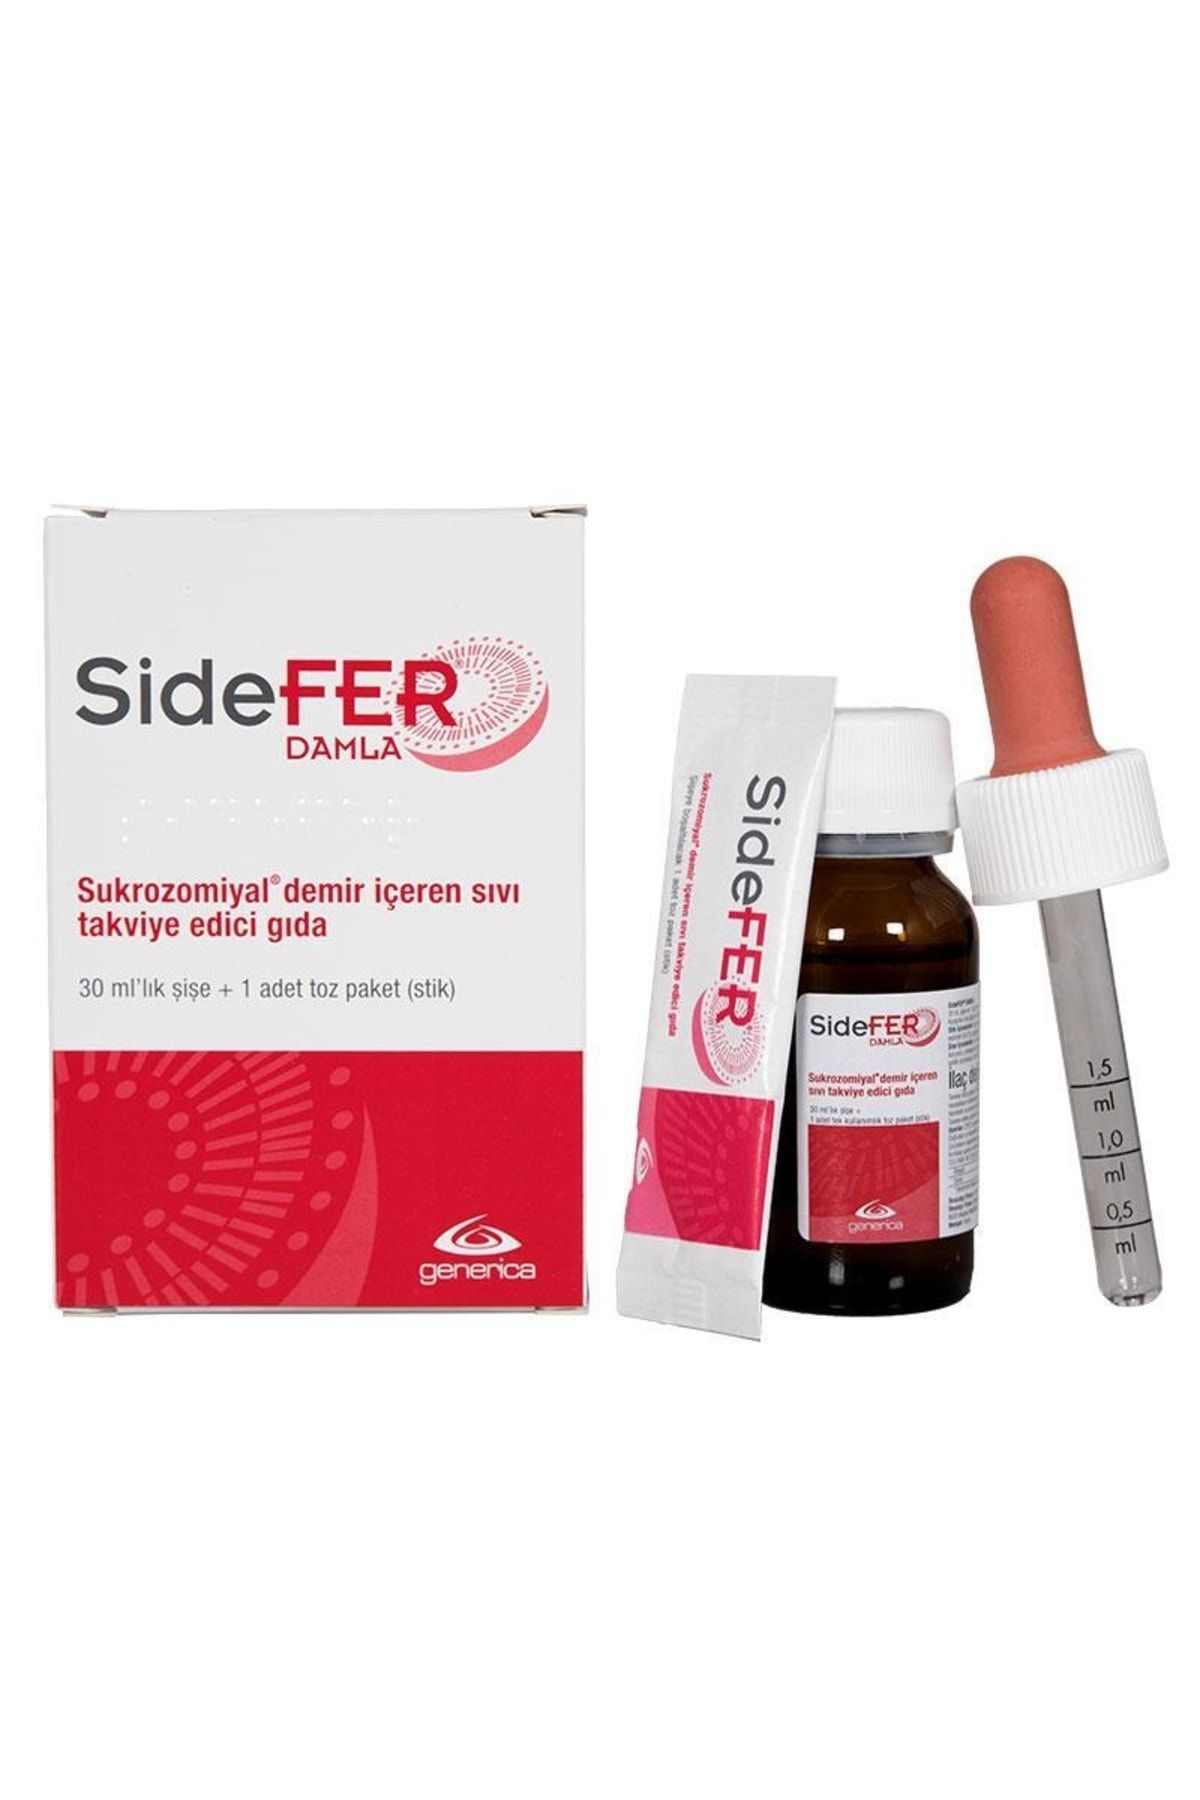 Sidefer Damla Takviye Edici Gıda 30ml Şişe + 1 Adet Toz